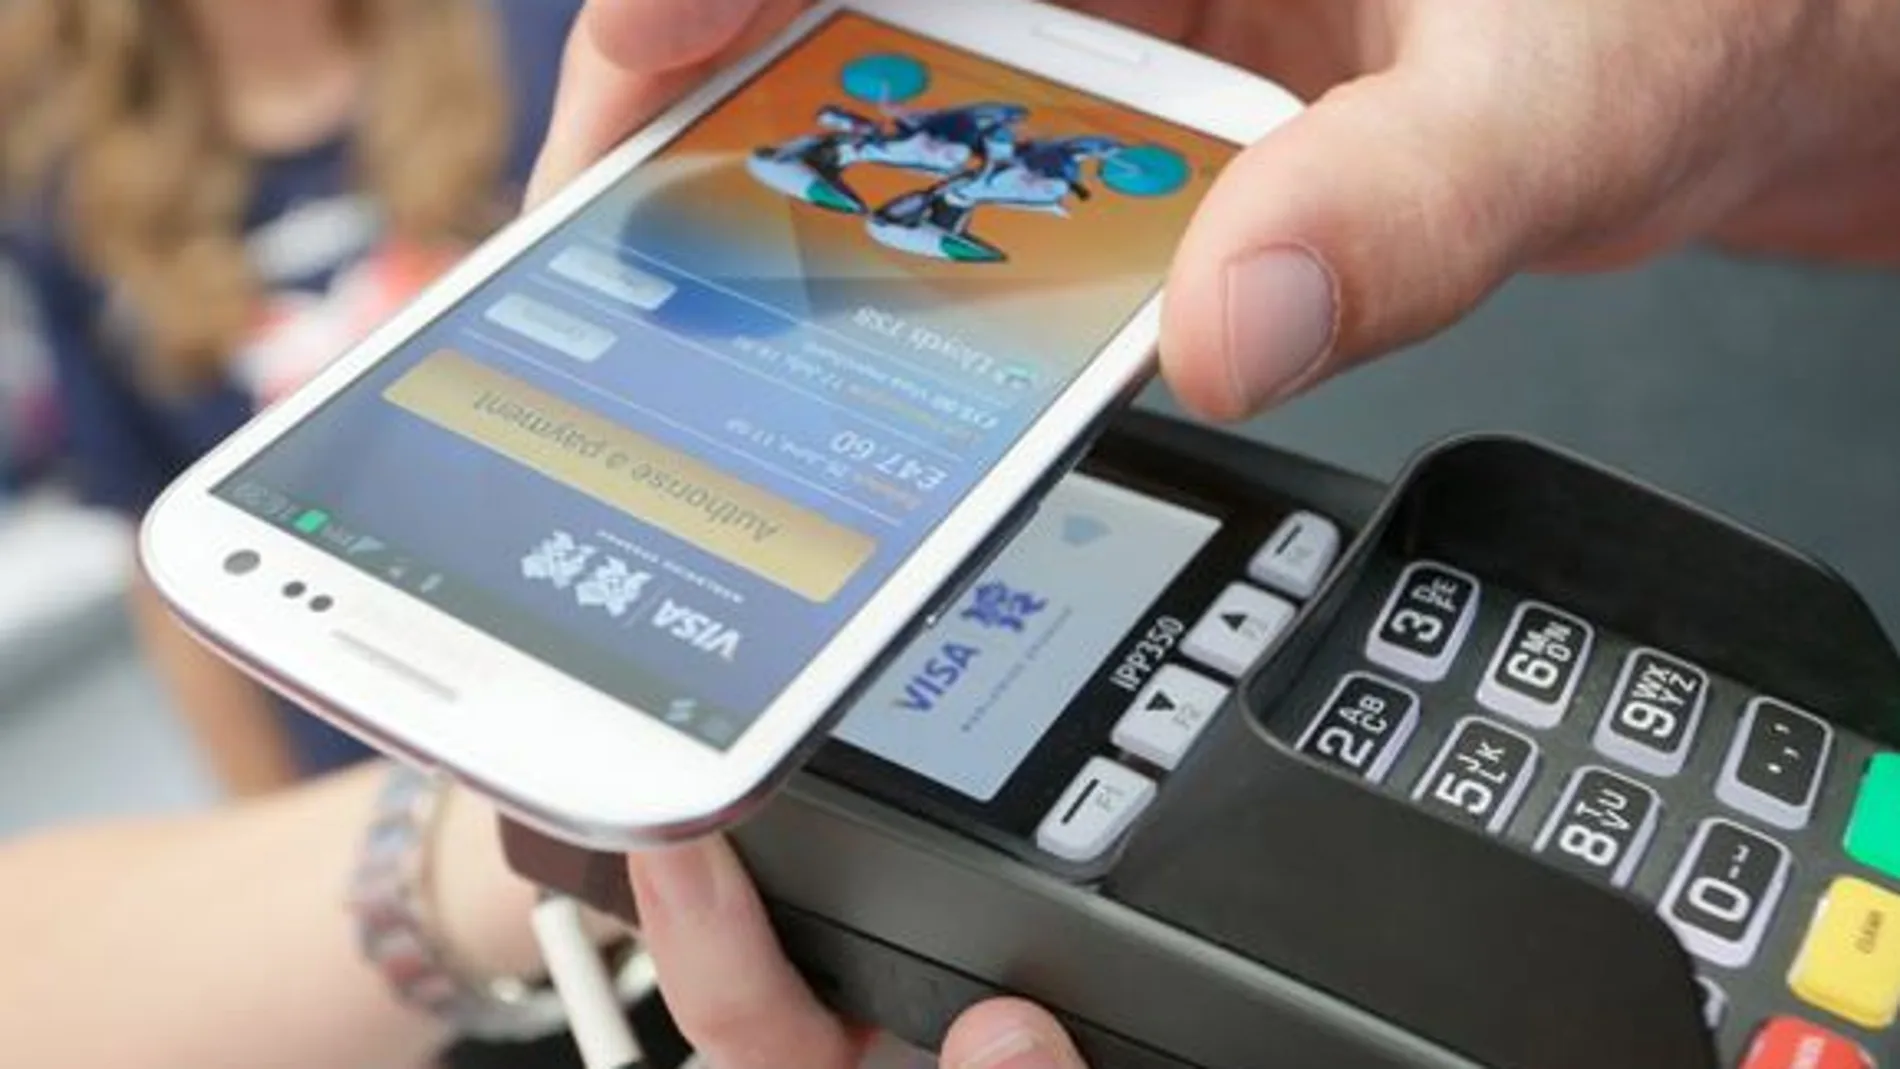 Los clientes de CaixaBank y de imaginBank serán podrán disfrutar de este nuevo servicio de pago móvil, seguro y de fácil uso.